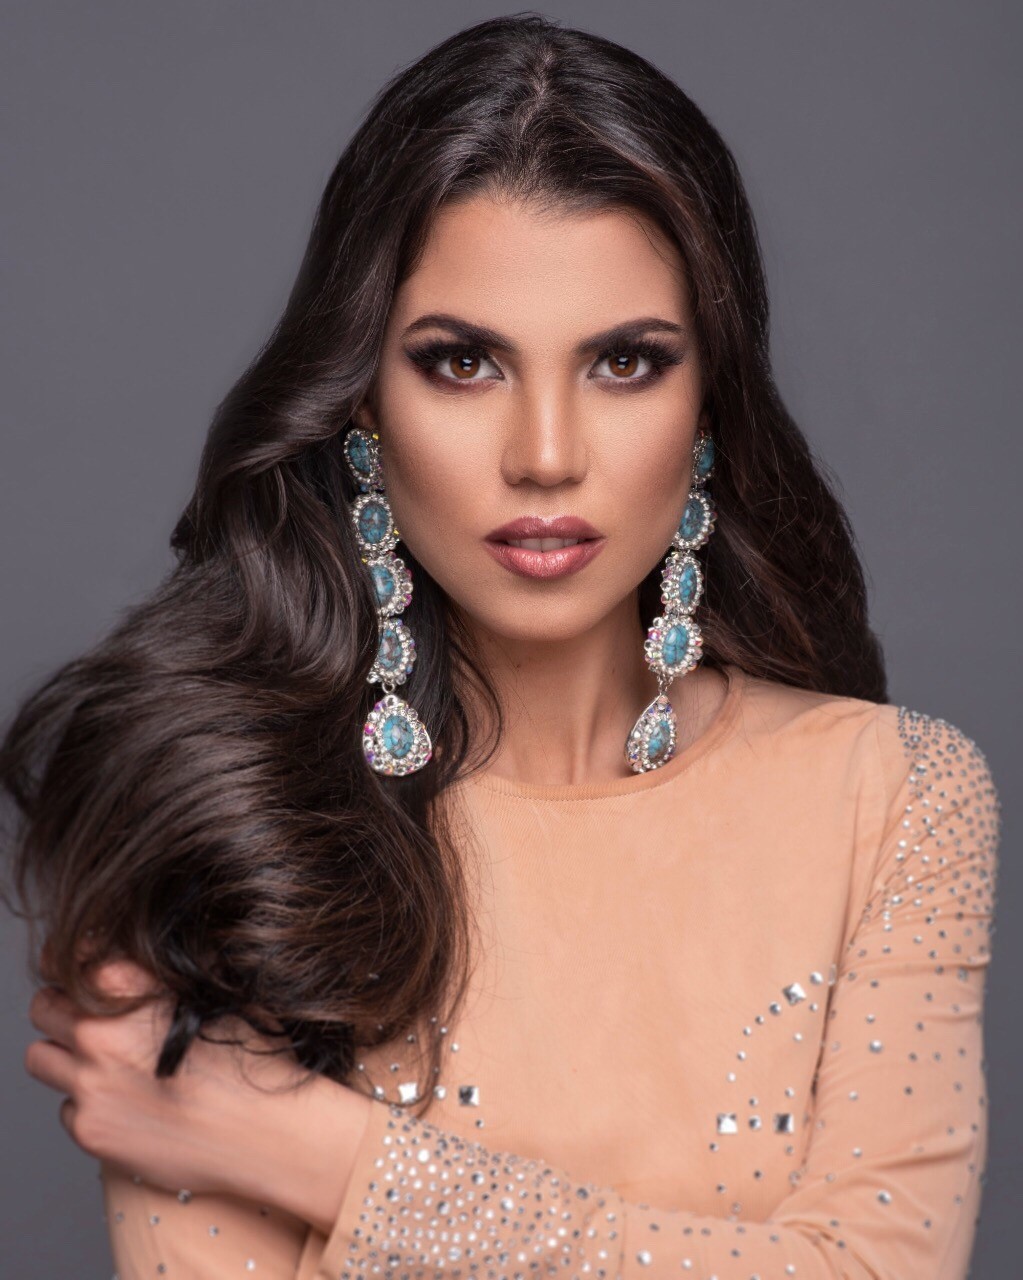 Fotos de Miss Chile 2018